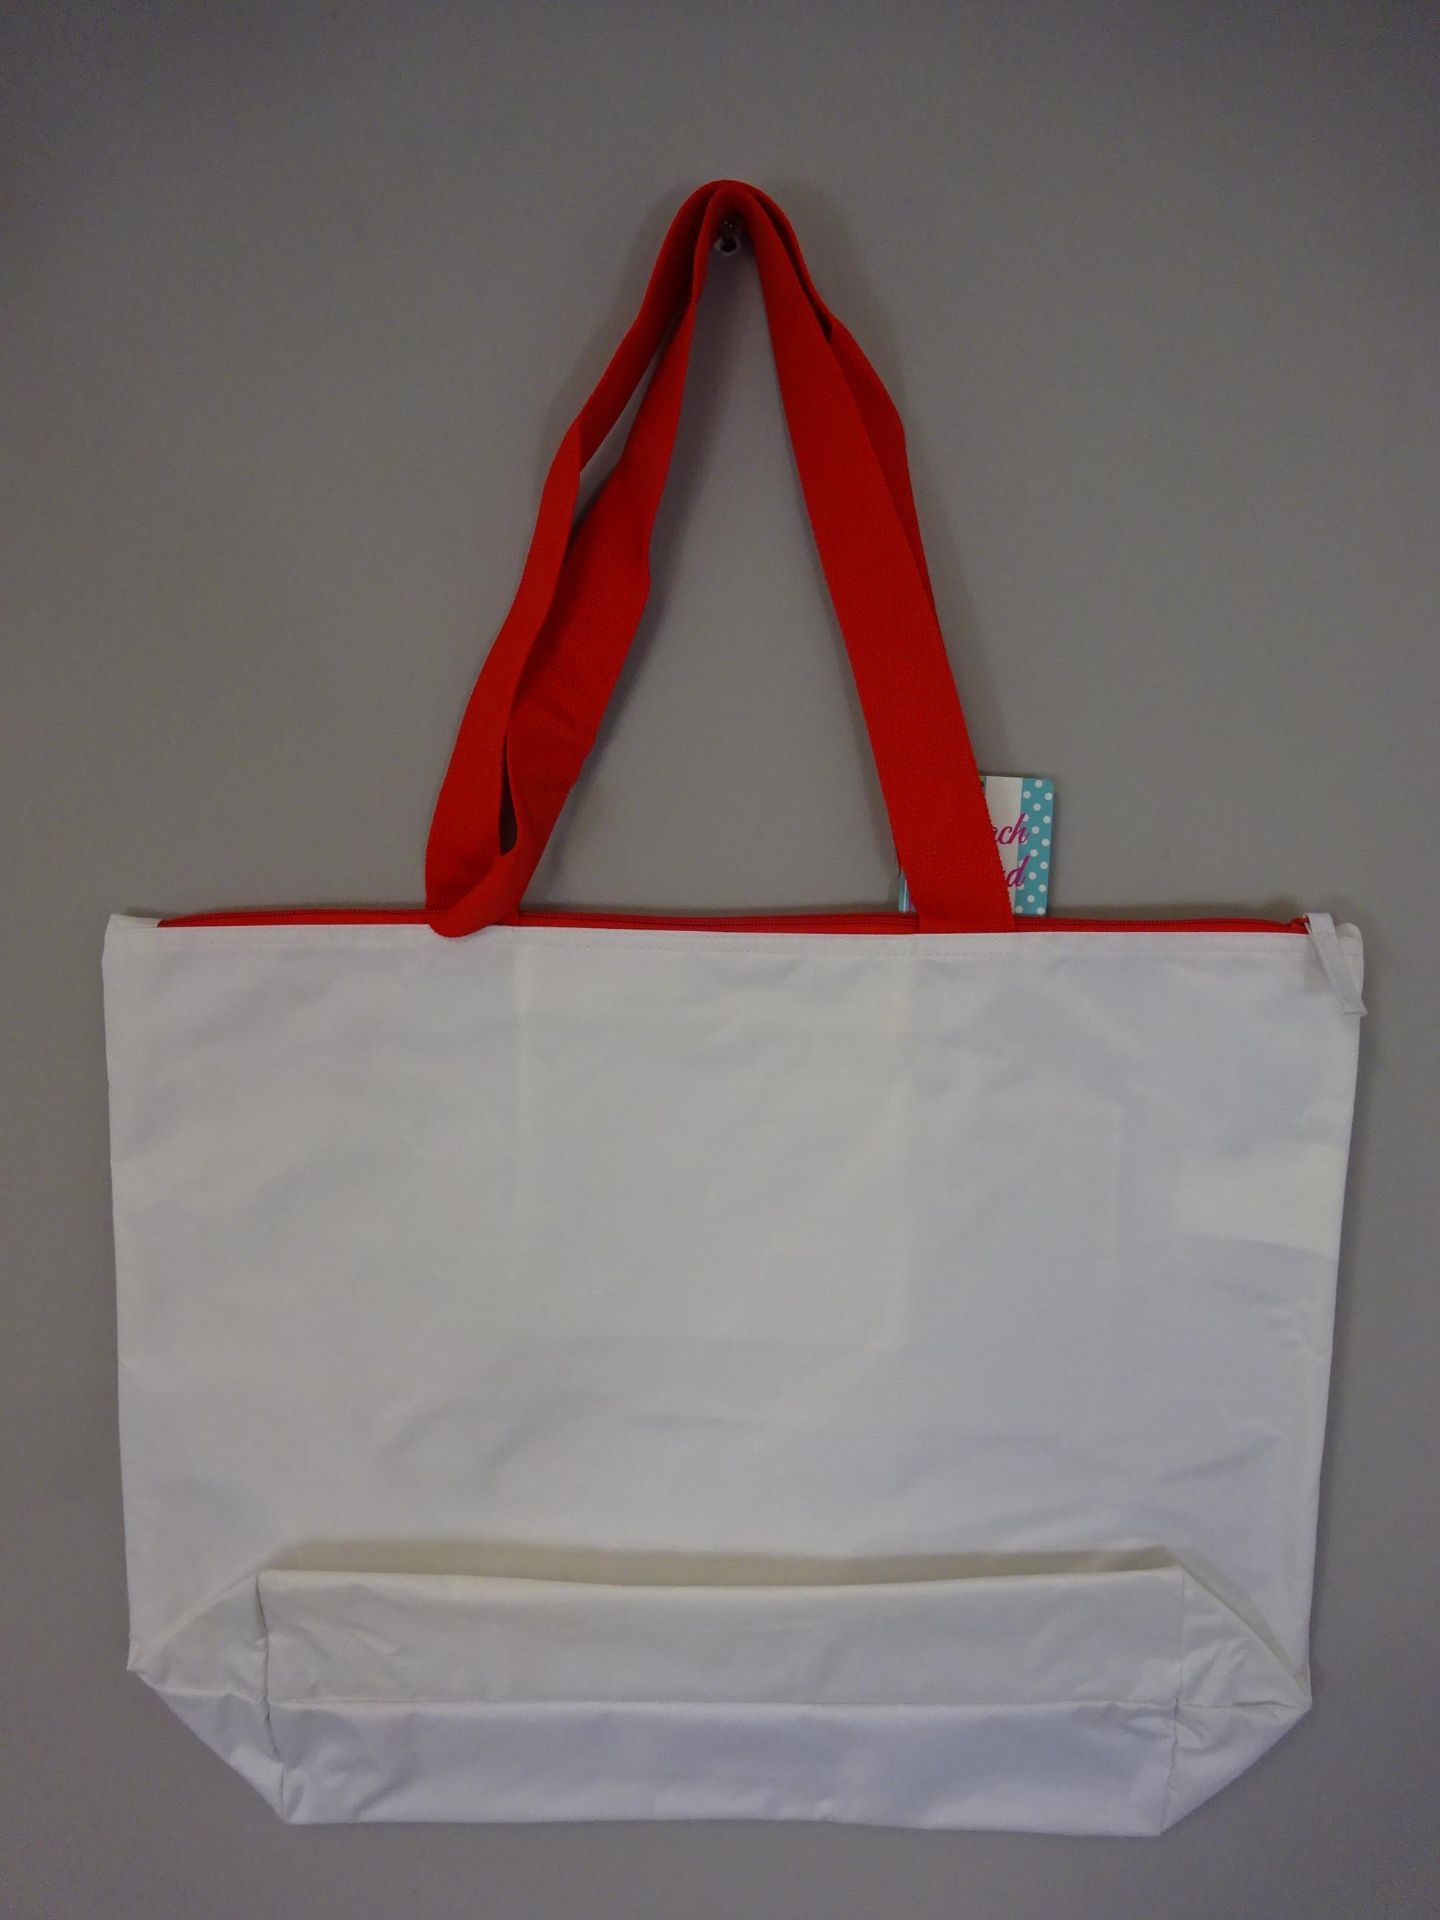 New Bag Patterened Waterproof Bag - Image 2 of 2